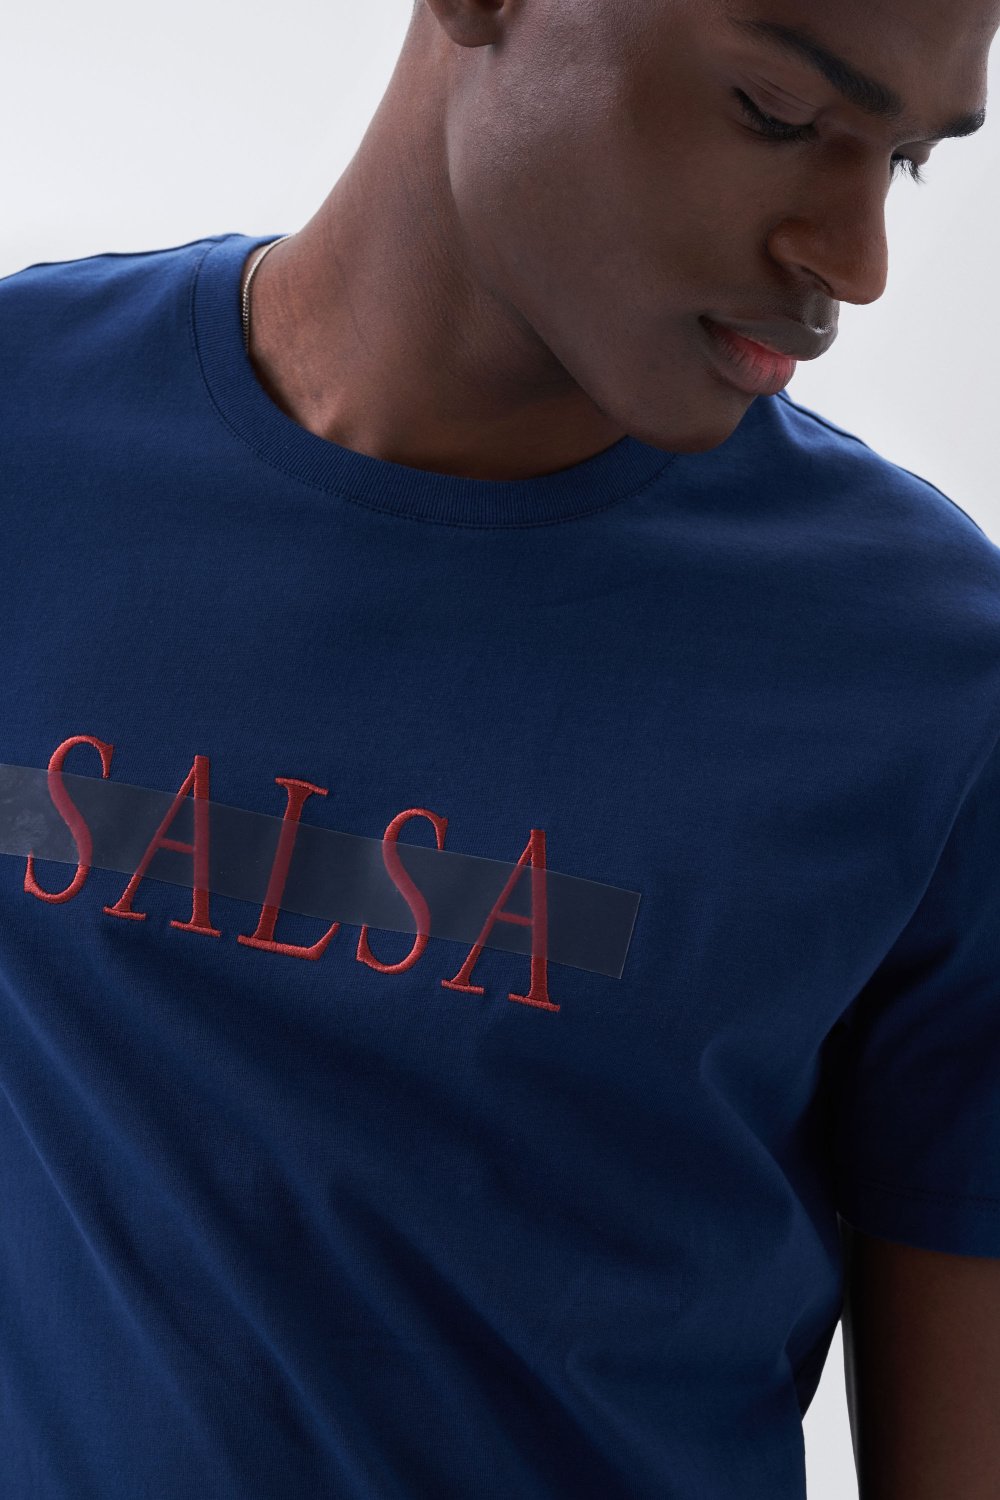 T-shirt grfico frente e costas - Salsa